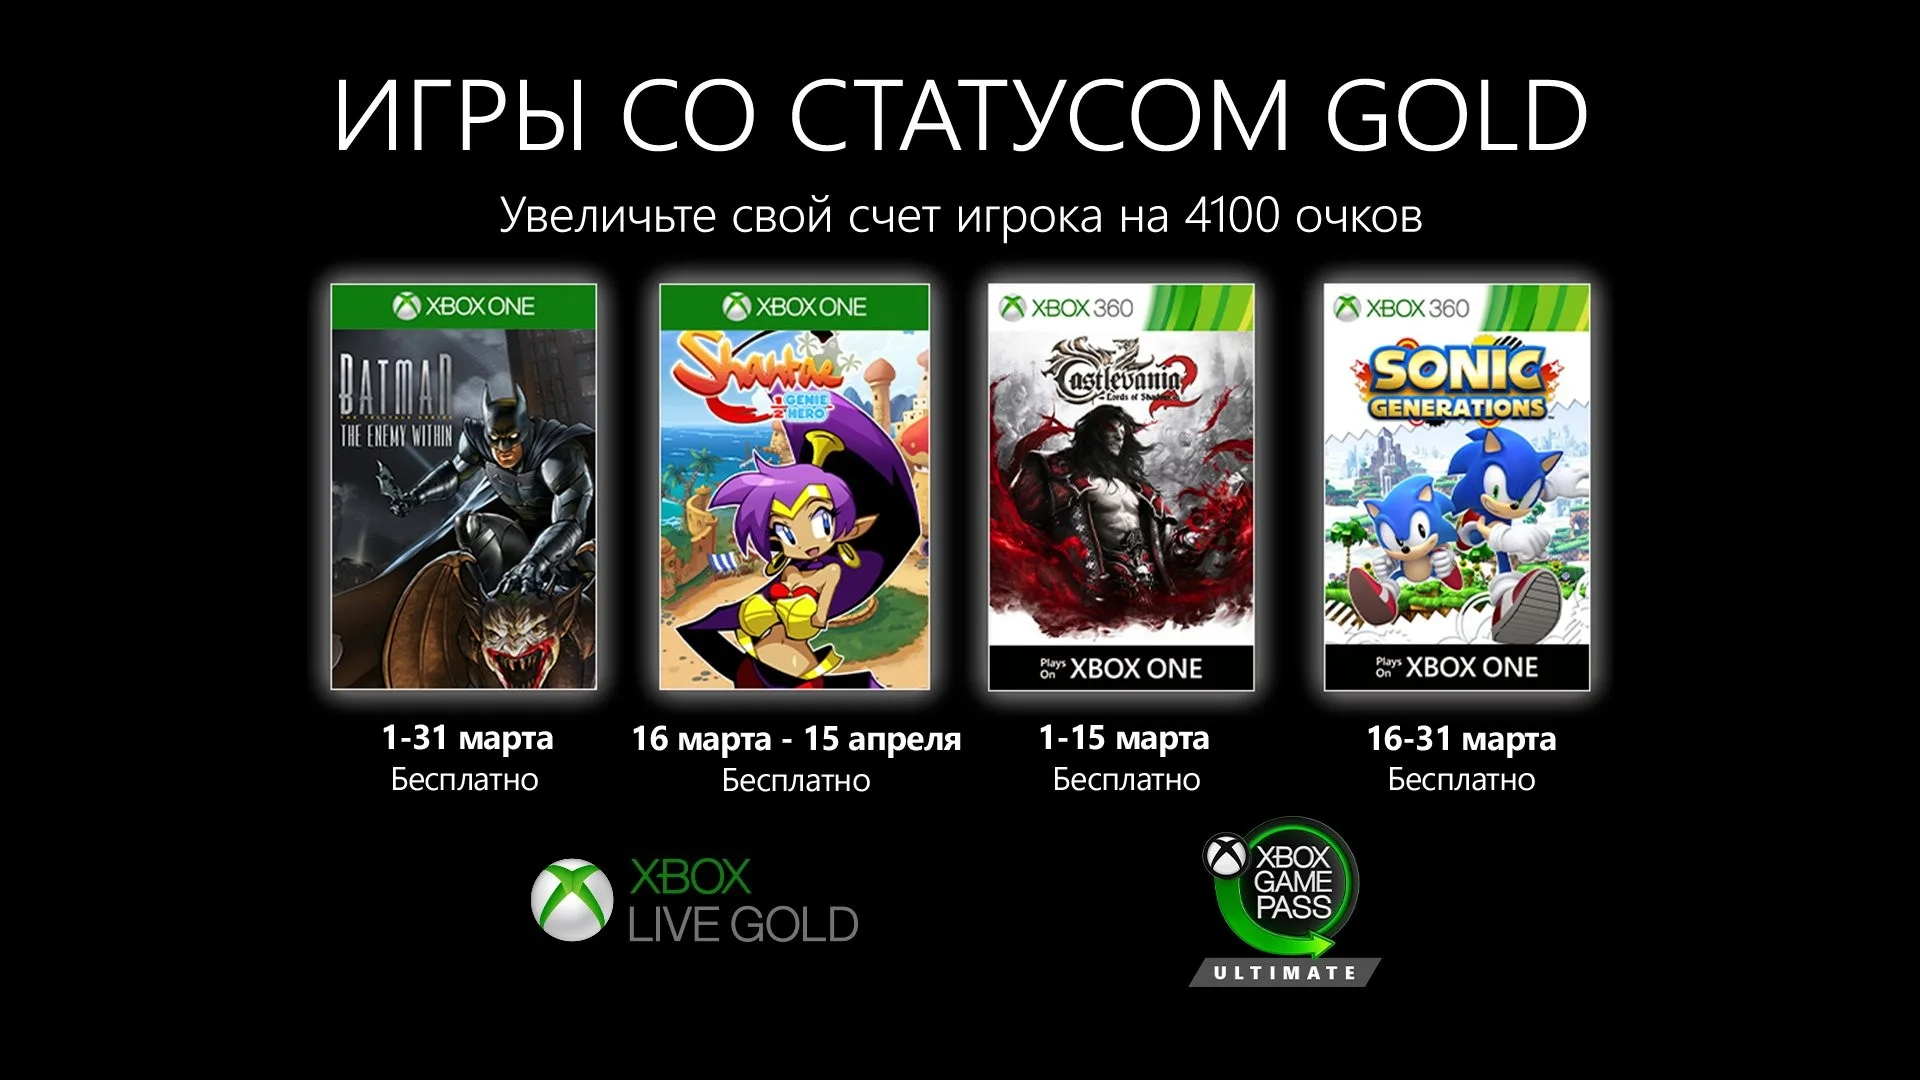 «Бэтмен», Castlevania и Sonic Generations: бесплатные игры Xbox Live Gold в марте - фото 1